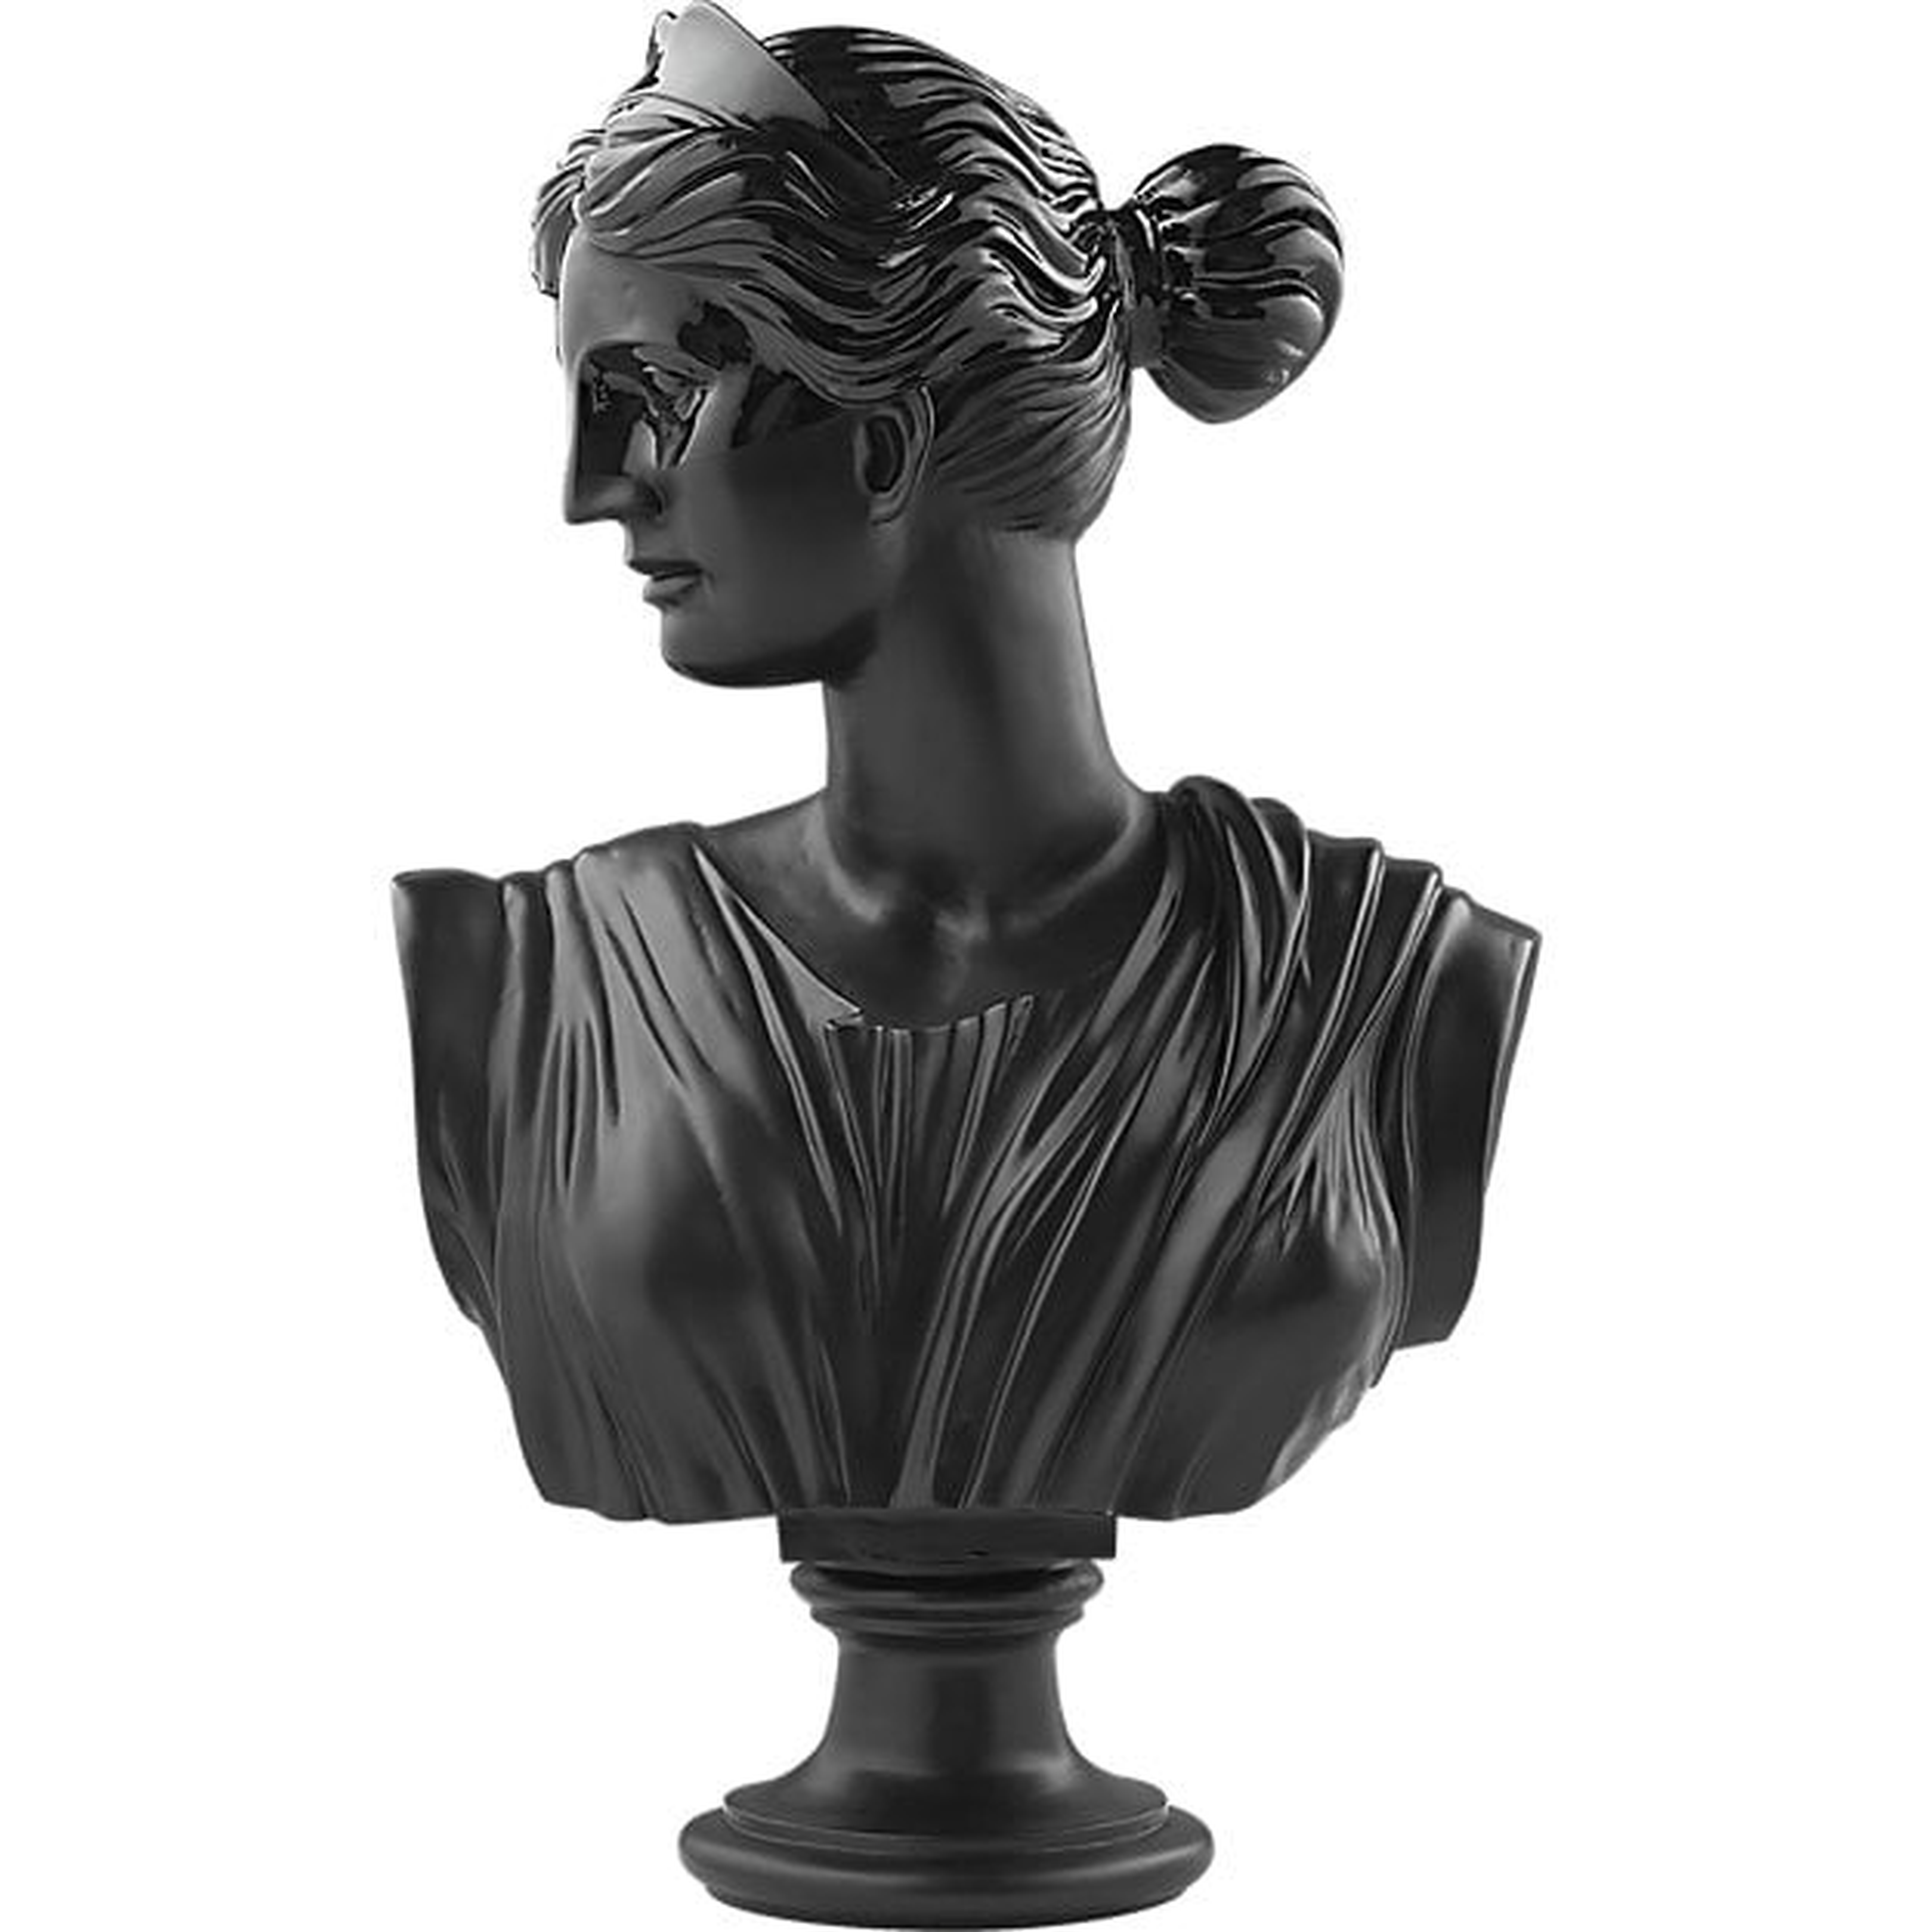 Judy Black Bust Sculpture - CB2